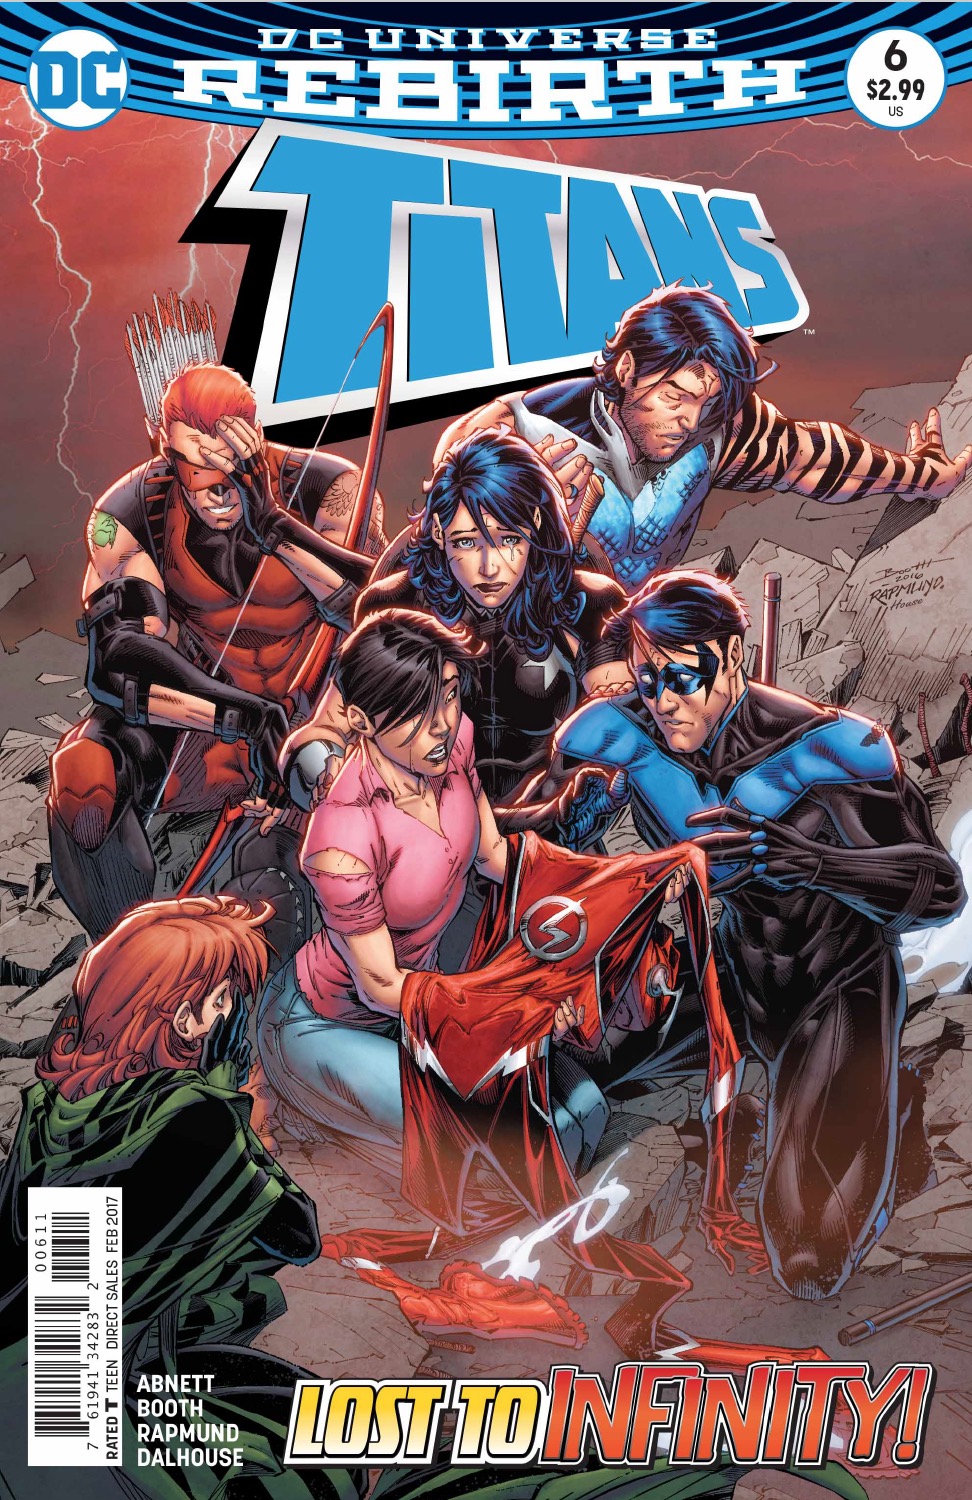 Titans #6 Review